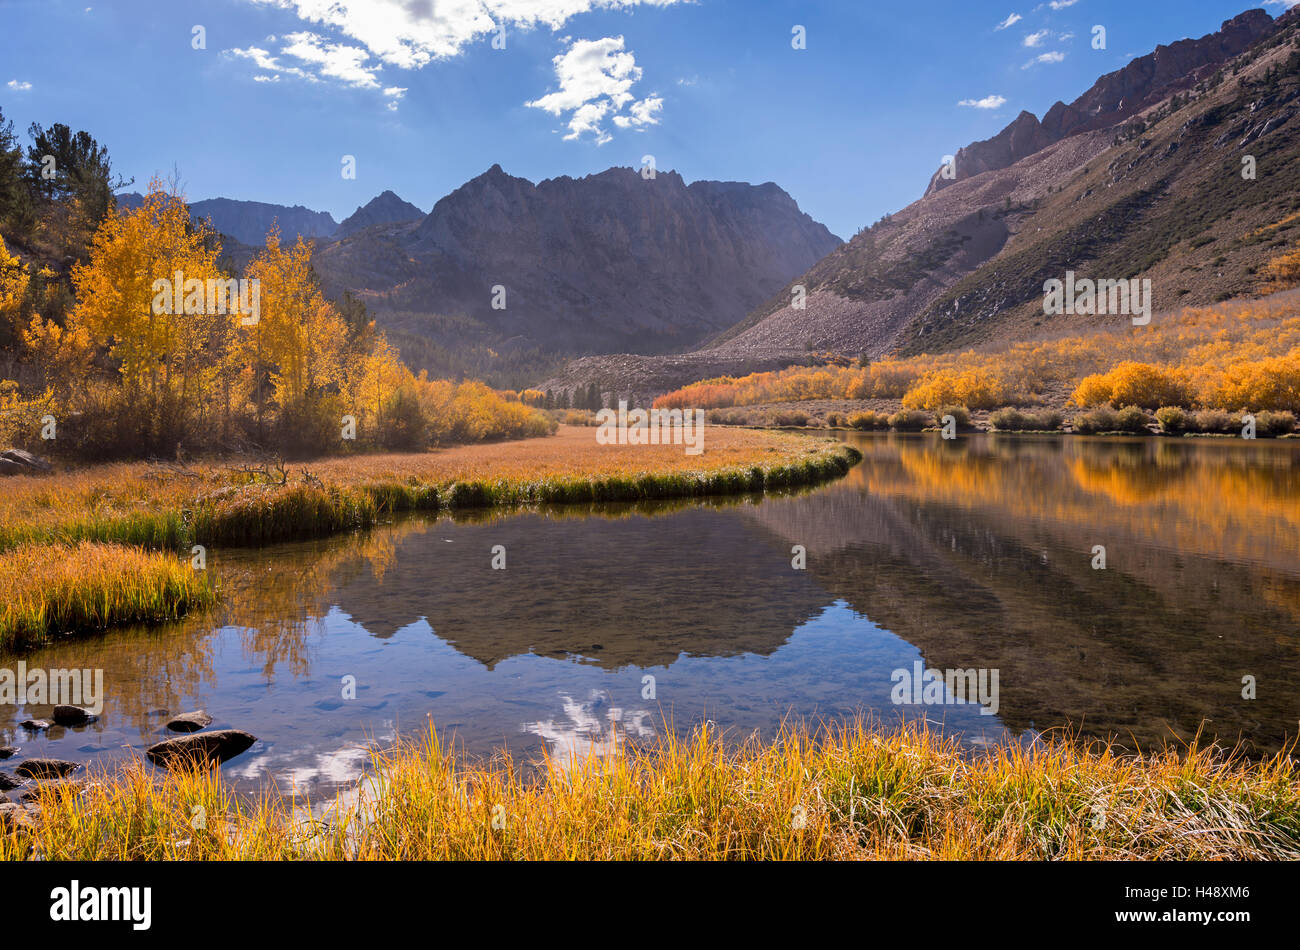 Les couleurs de l'automne glorieux entourent le lac du nord dans l'Est de Sierras, Nr Bishop, California, USA. L'automne (octobre) 2014. Banque D'Images